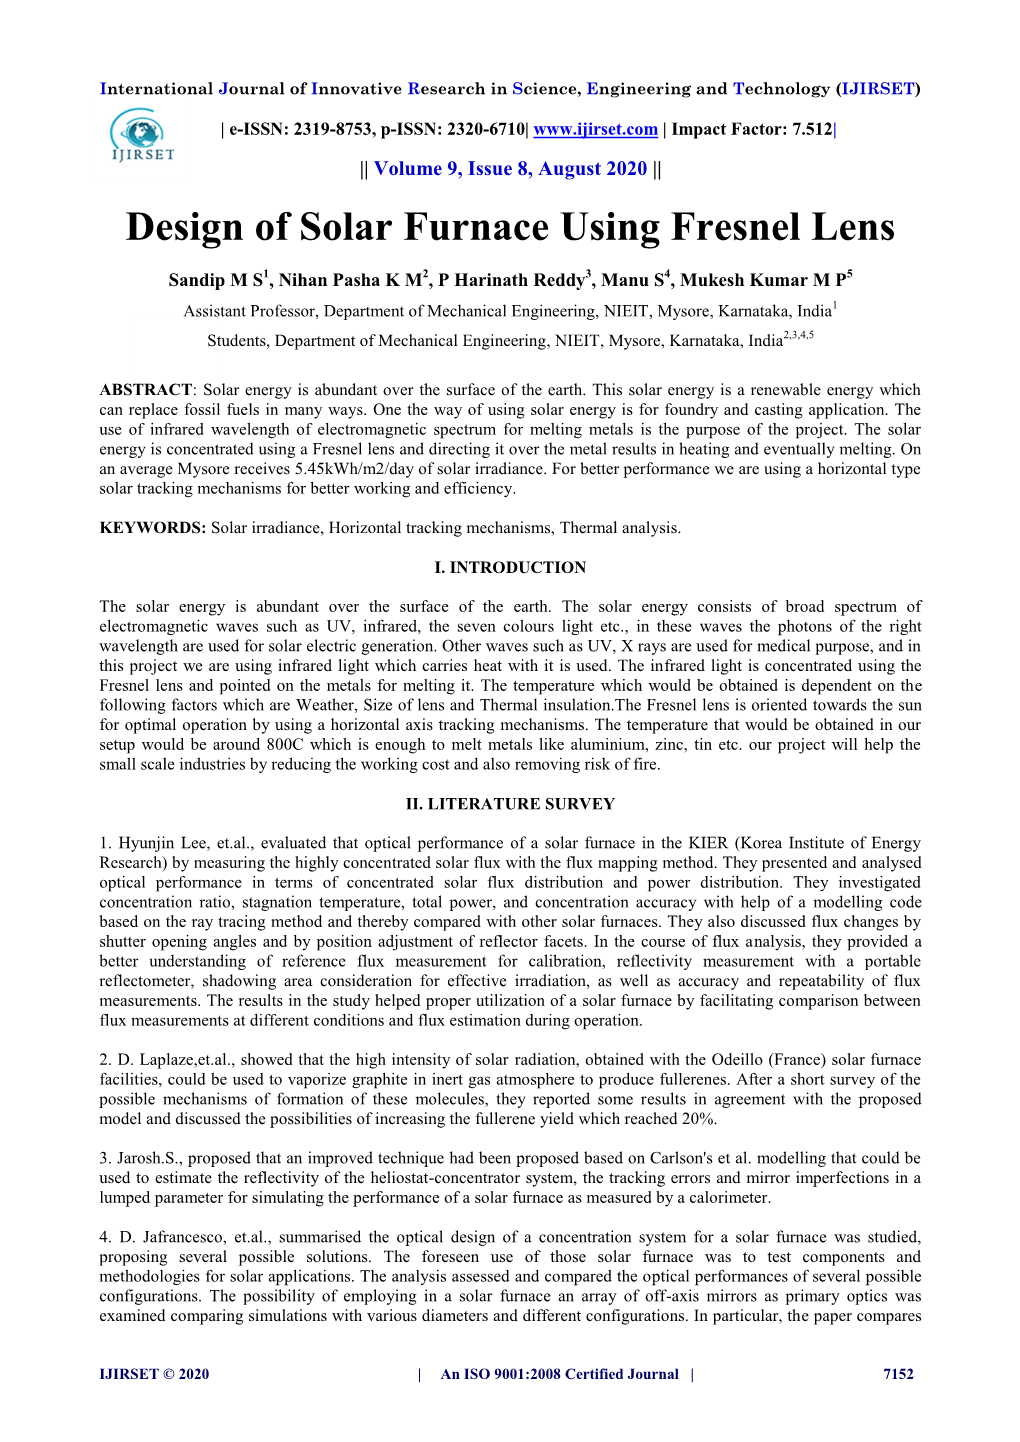 Design of Solar Furnace Using Fresnel Lens